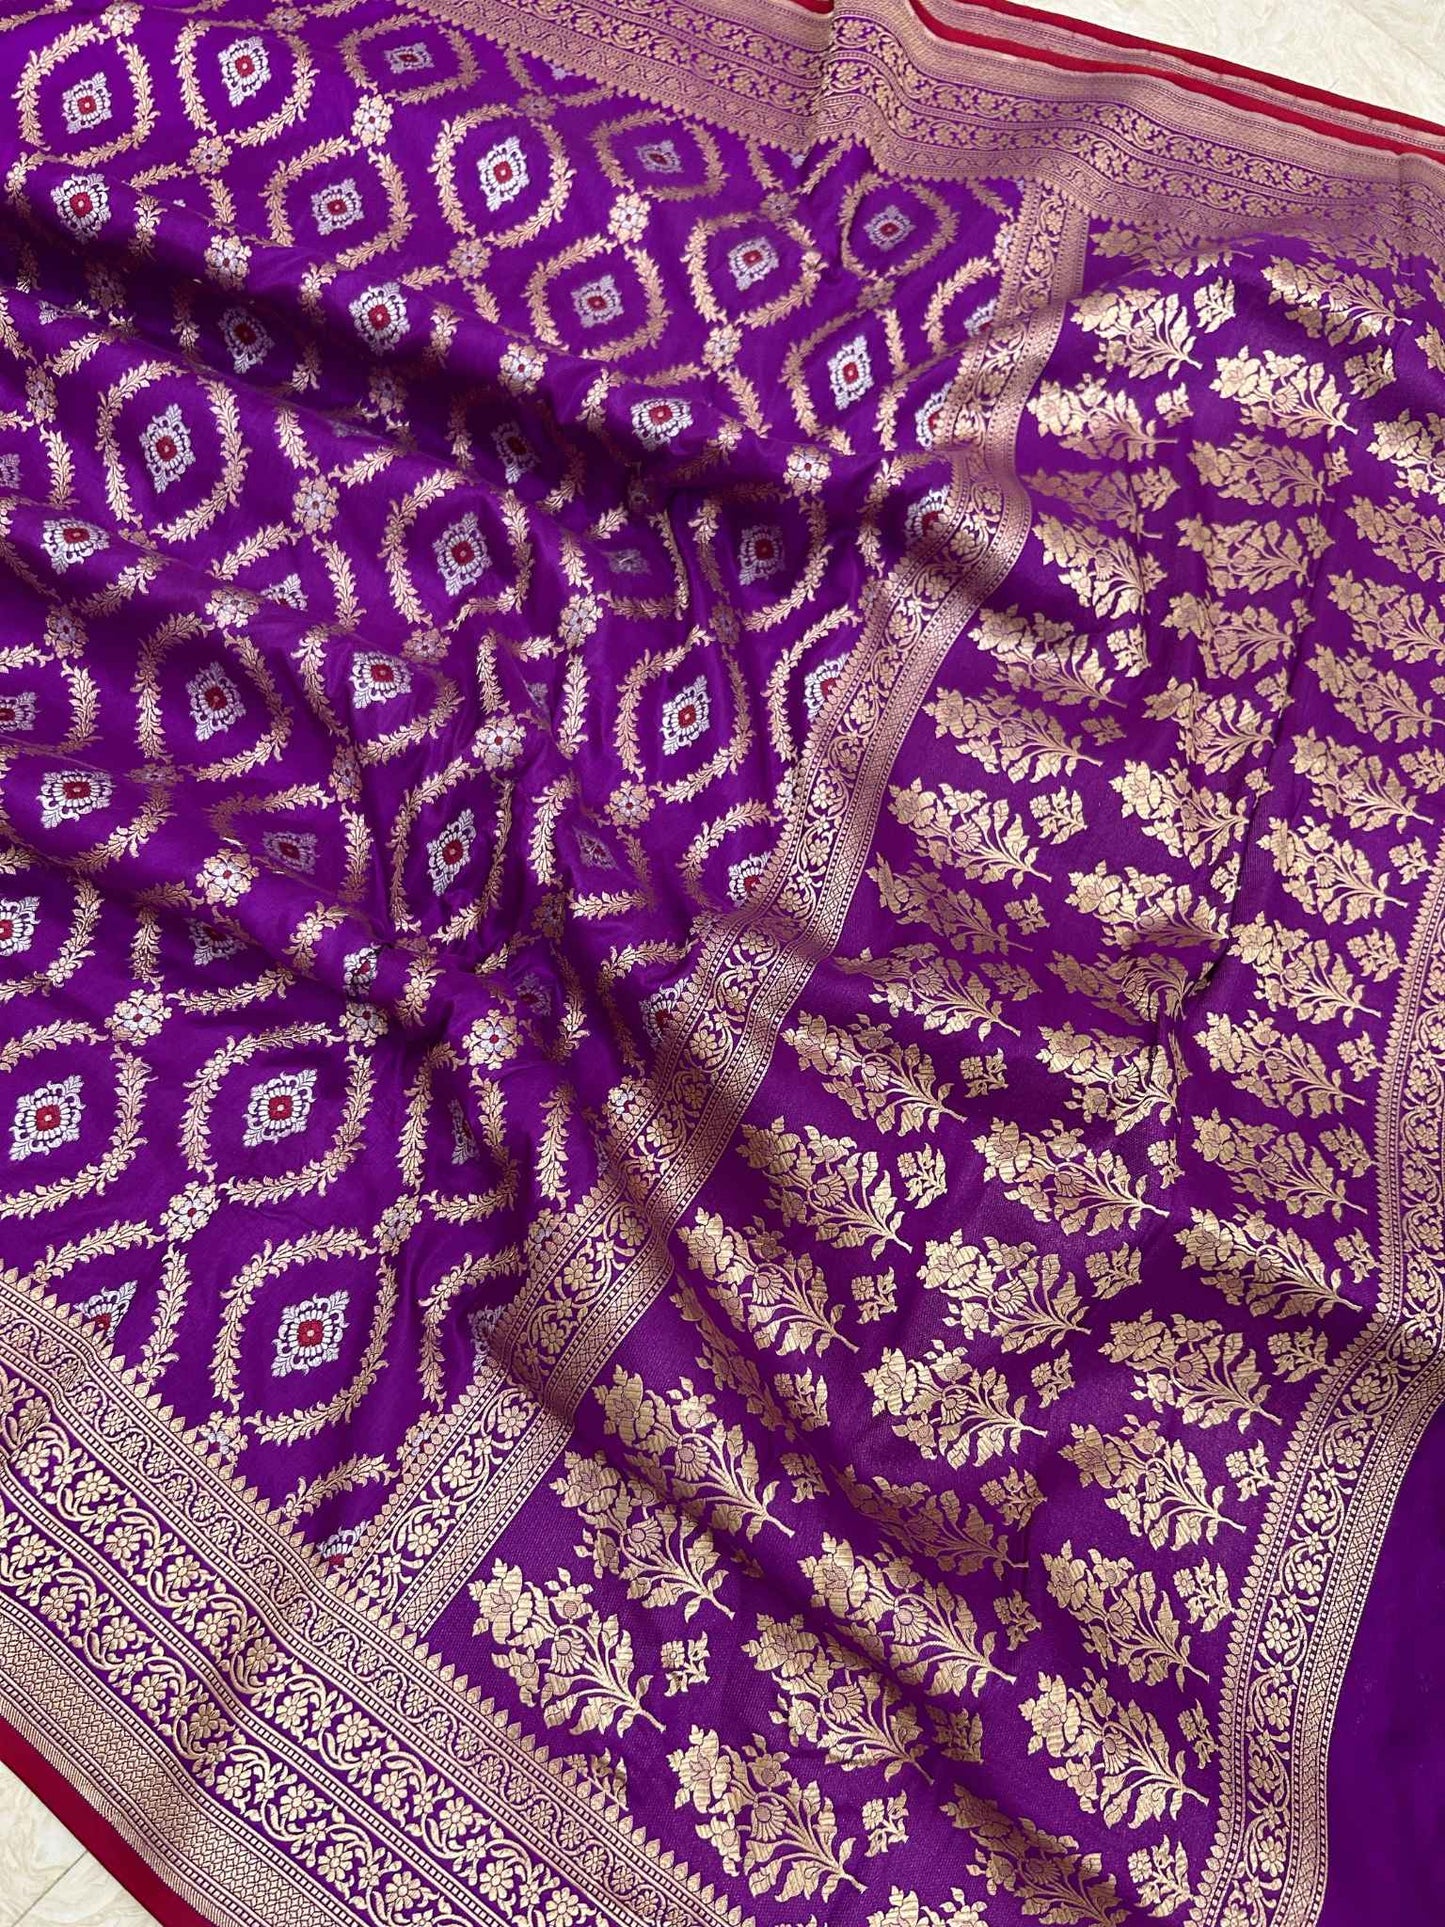 Pure Katan Silk Handloom Banarasi Saree - All over Sona roopa Jaal work with meenakari